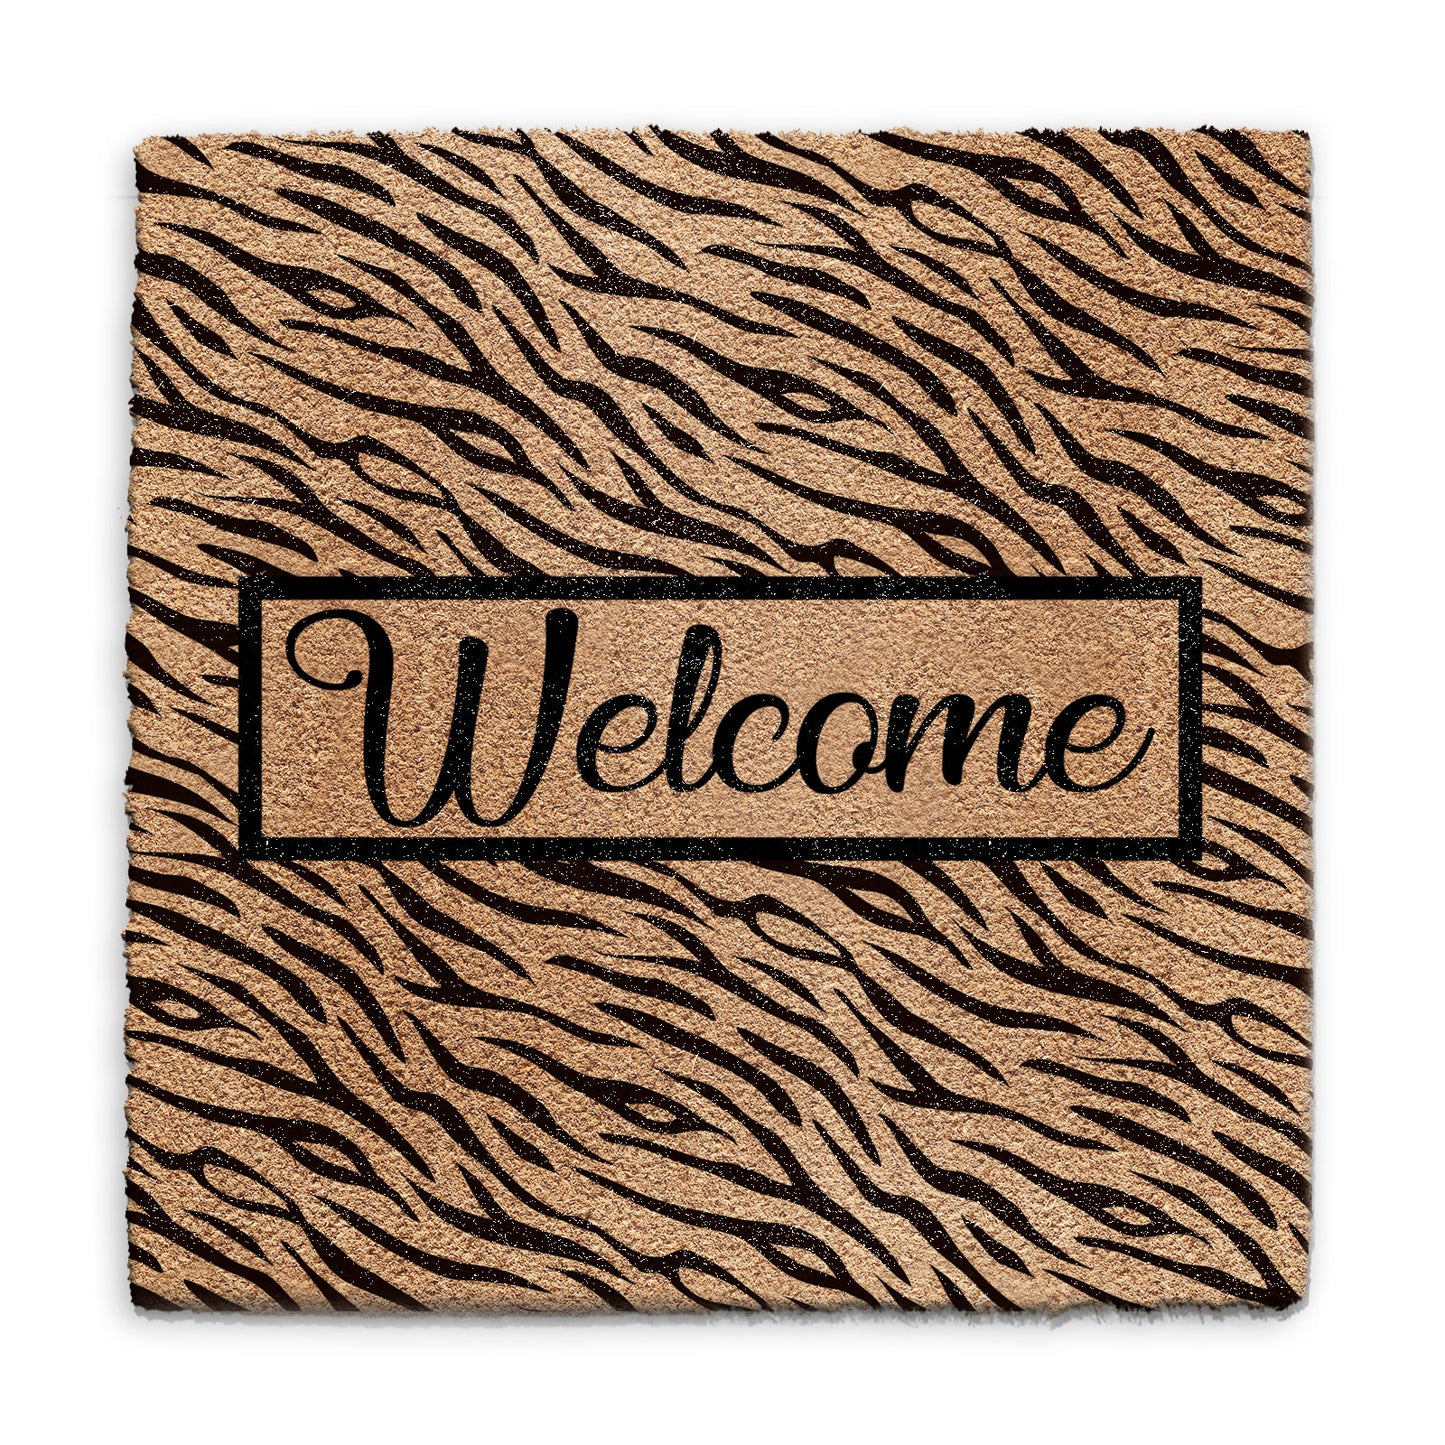 Coir Doormat - Tiger Print Welcome